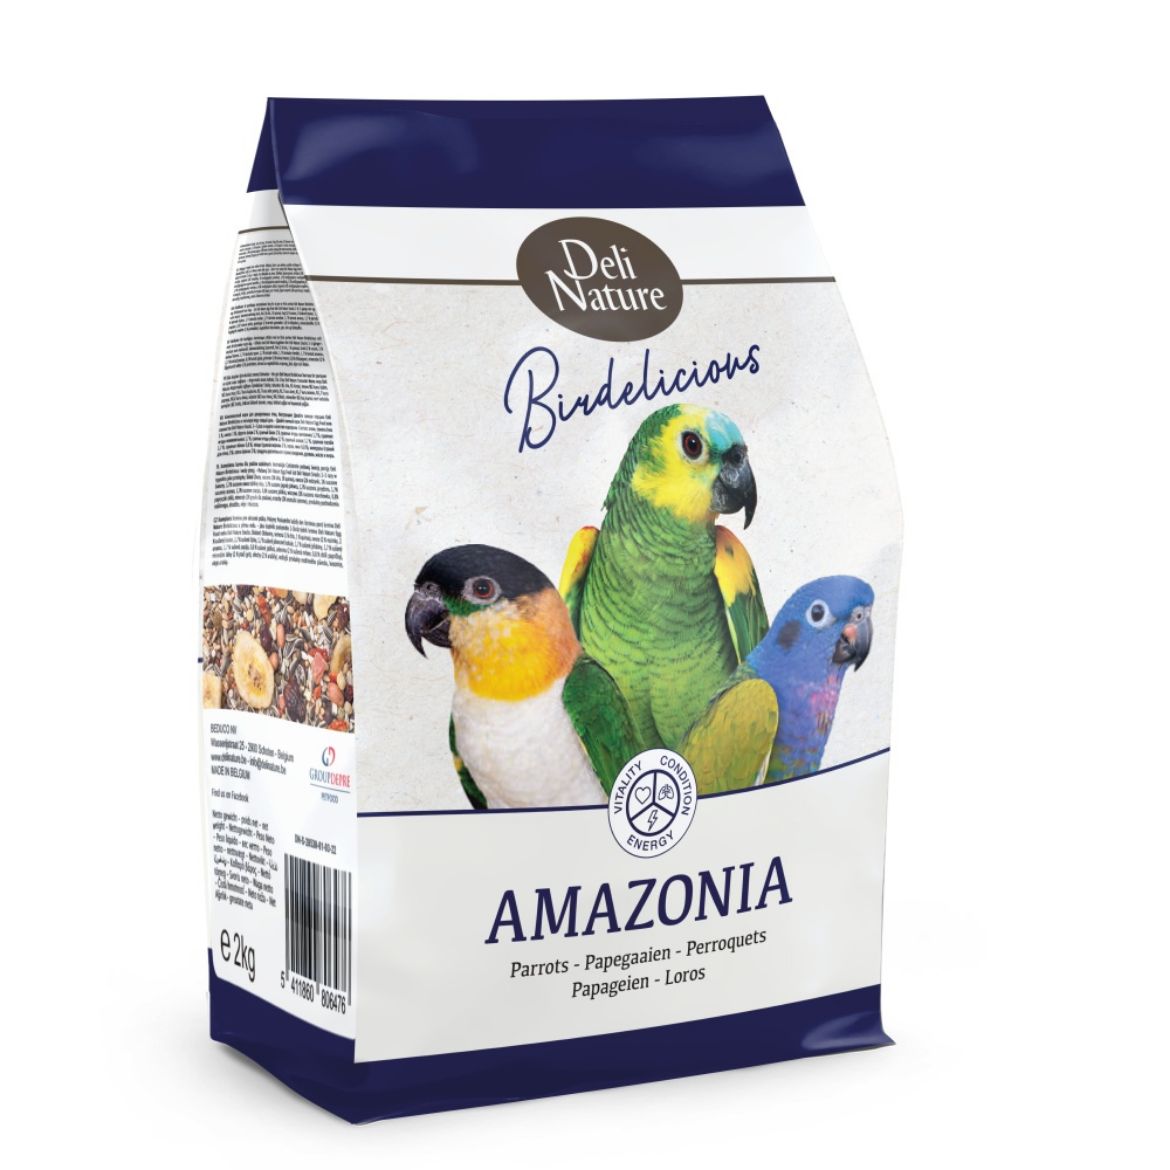 Obrázek z Deli Nature Birdelicious Amazonia amazonský papoušek 2 kg 